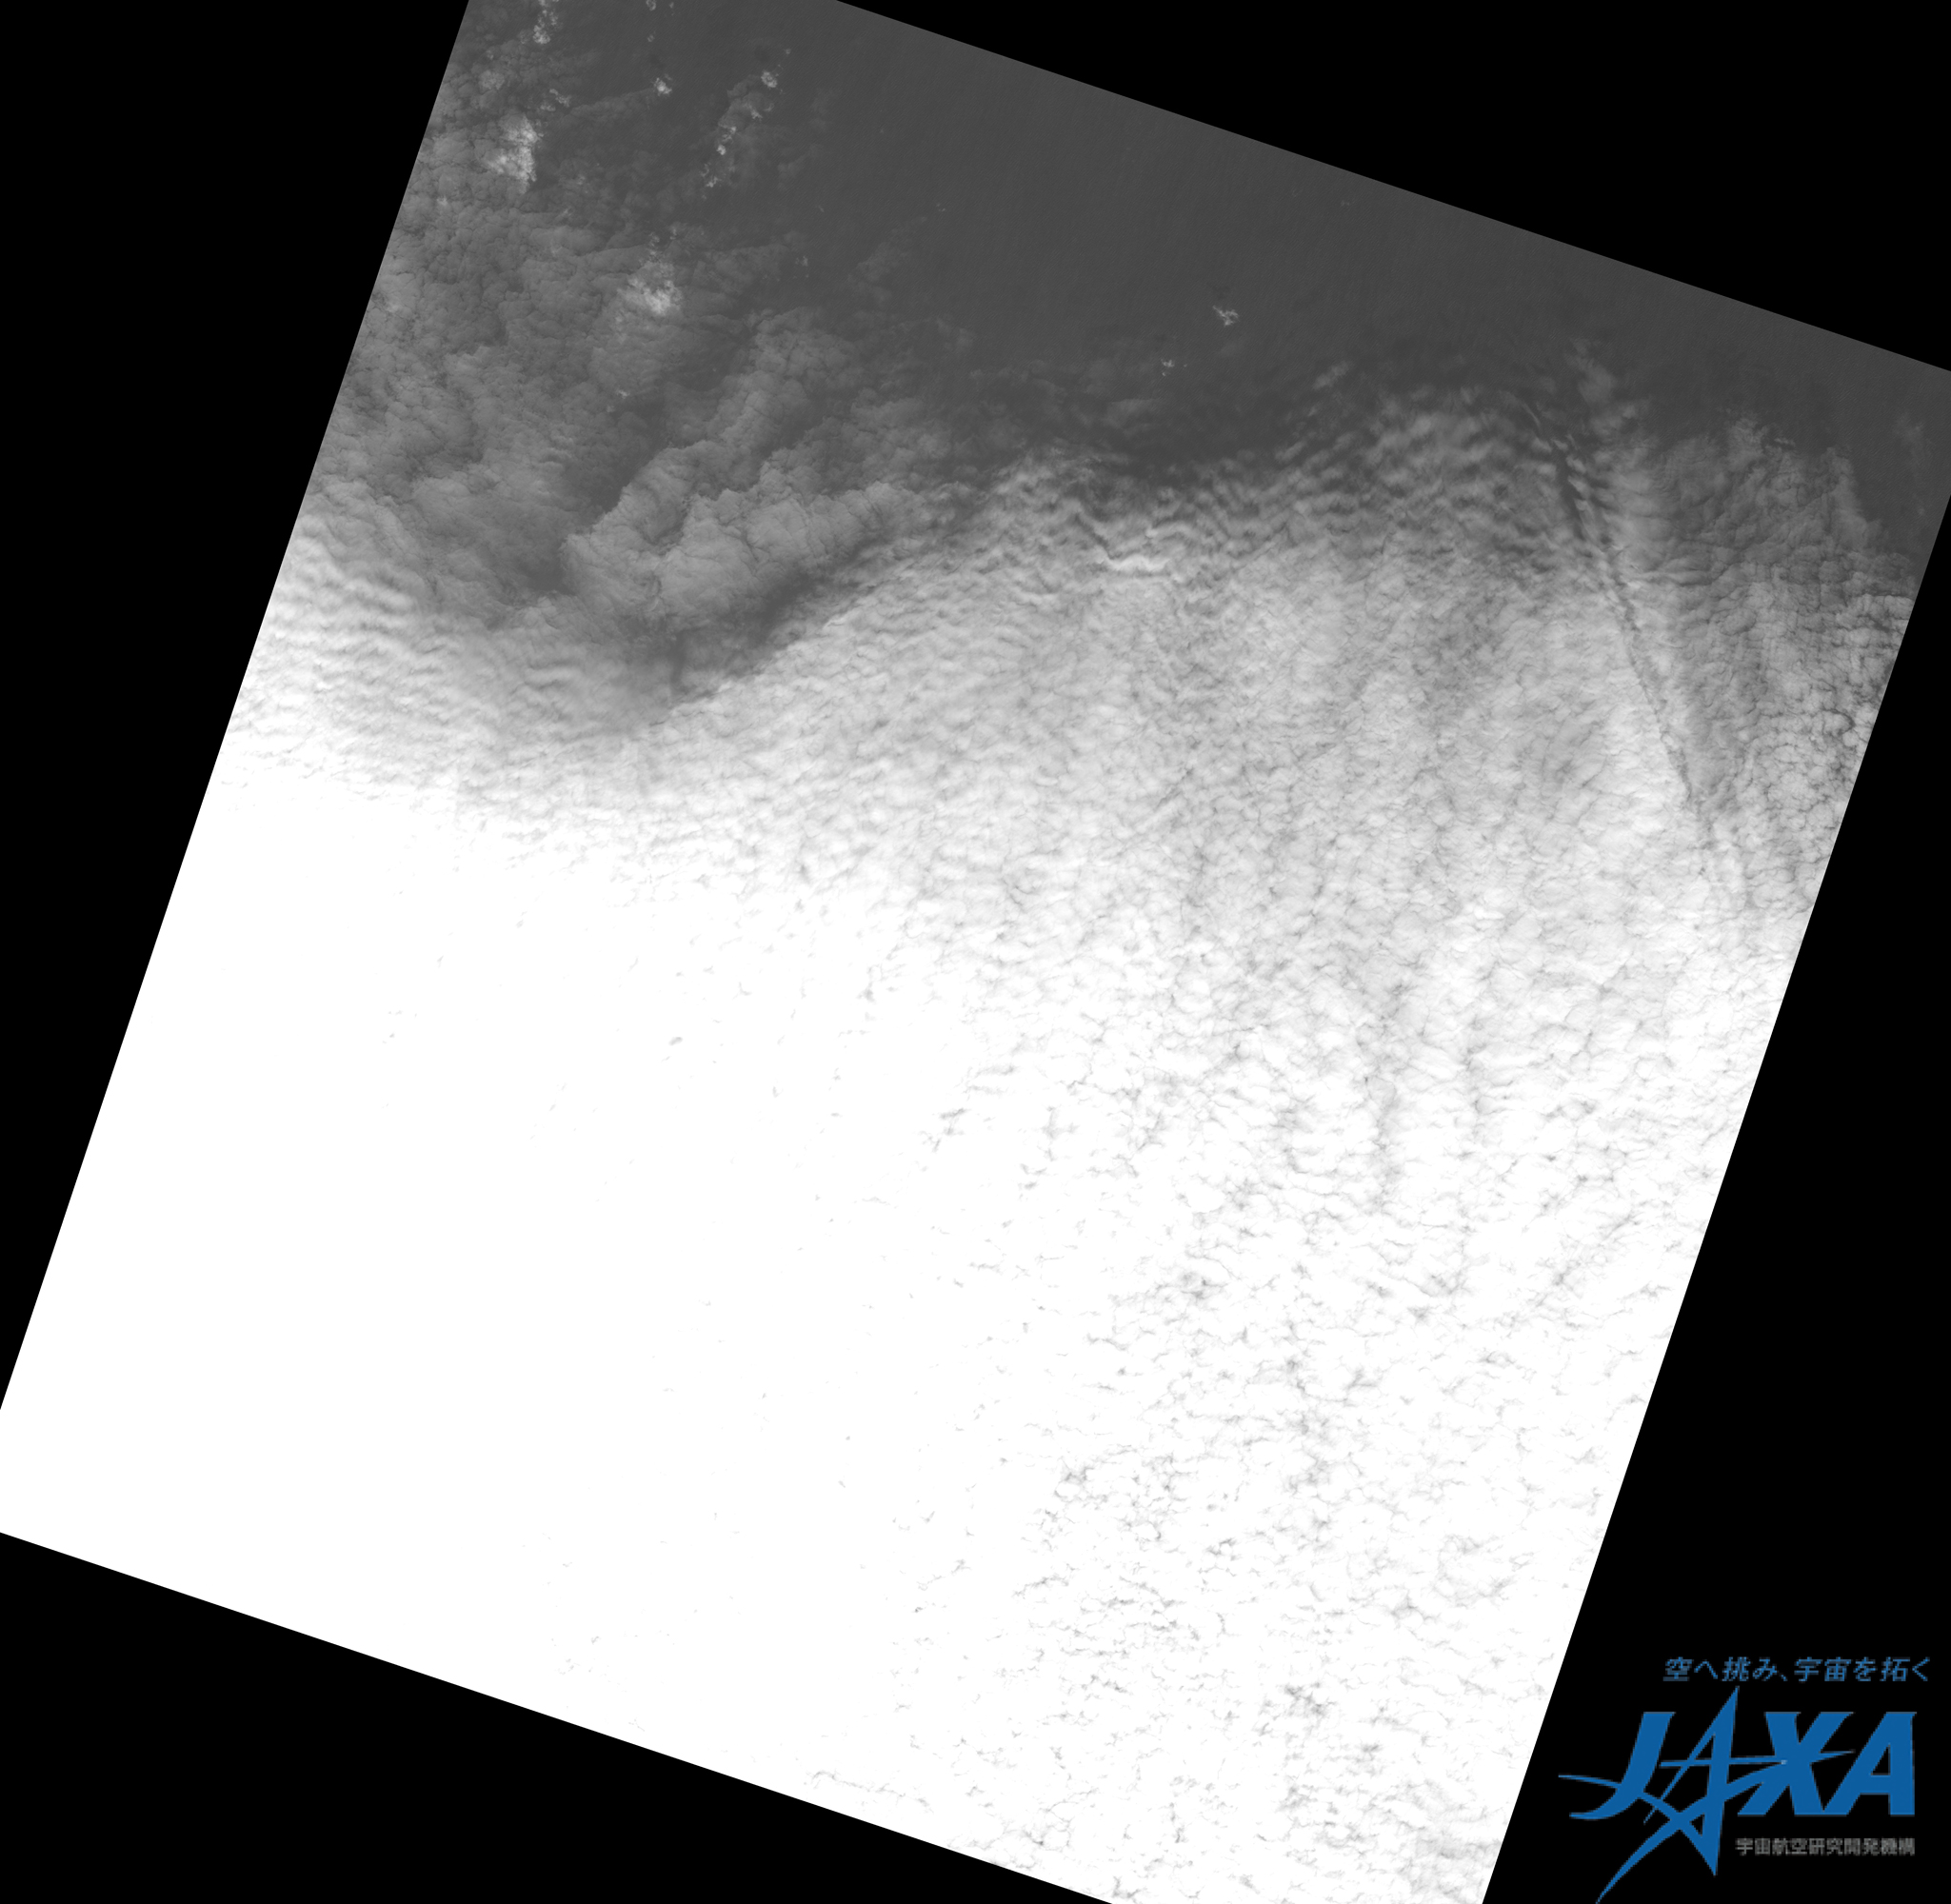 図1:陸域観測技術衛星「だいち」搭載センサ、パンクロマチック立体視センサ(プリズム)の最終画像(アラスカ南東部海上、取得日時：2011年4月22日5時21分頃(日本時間))